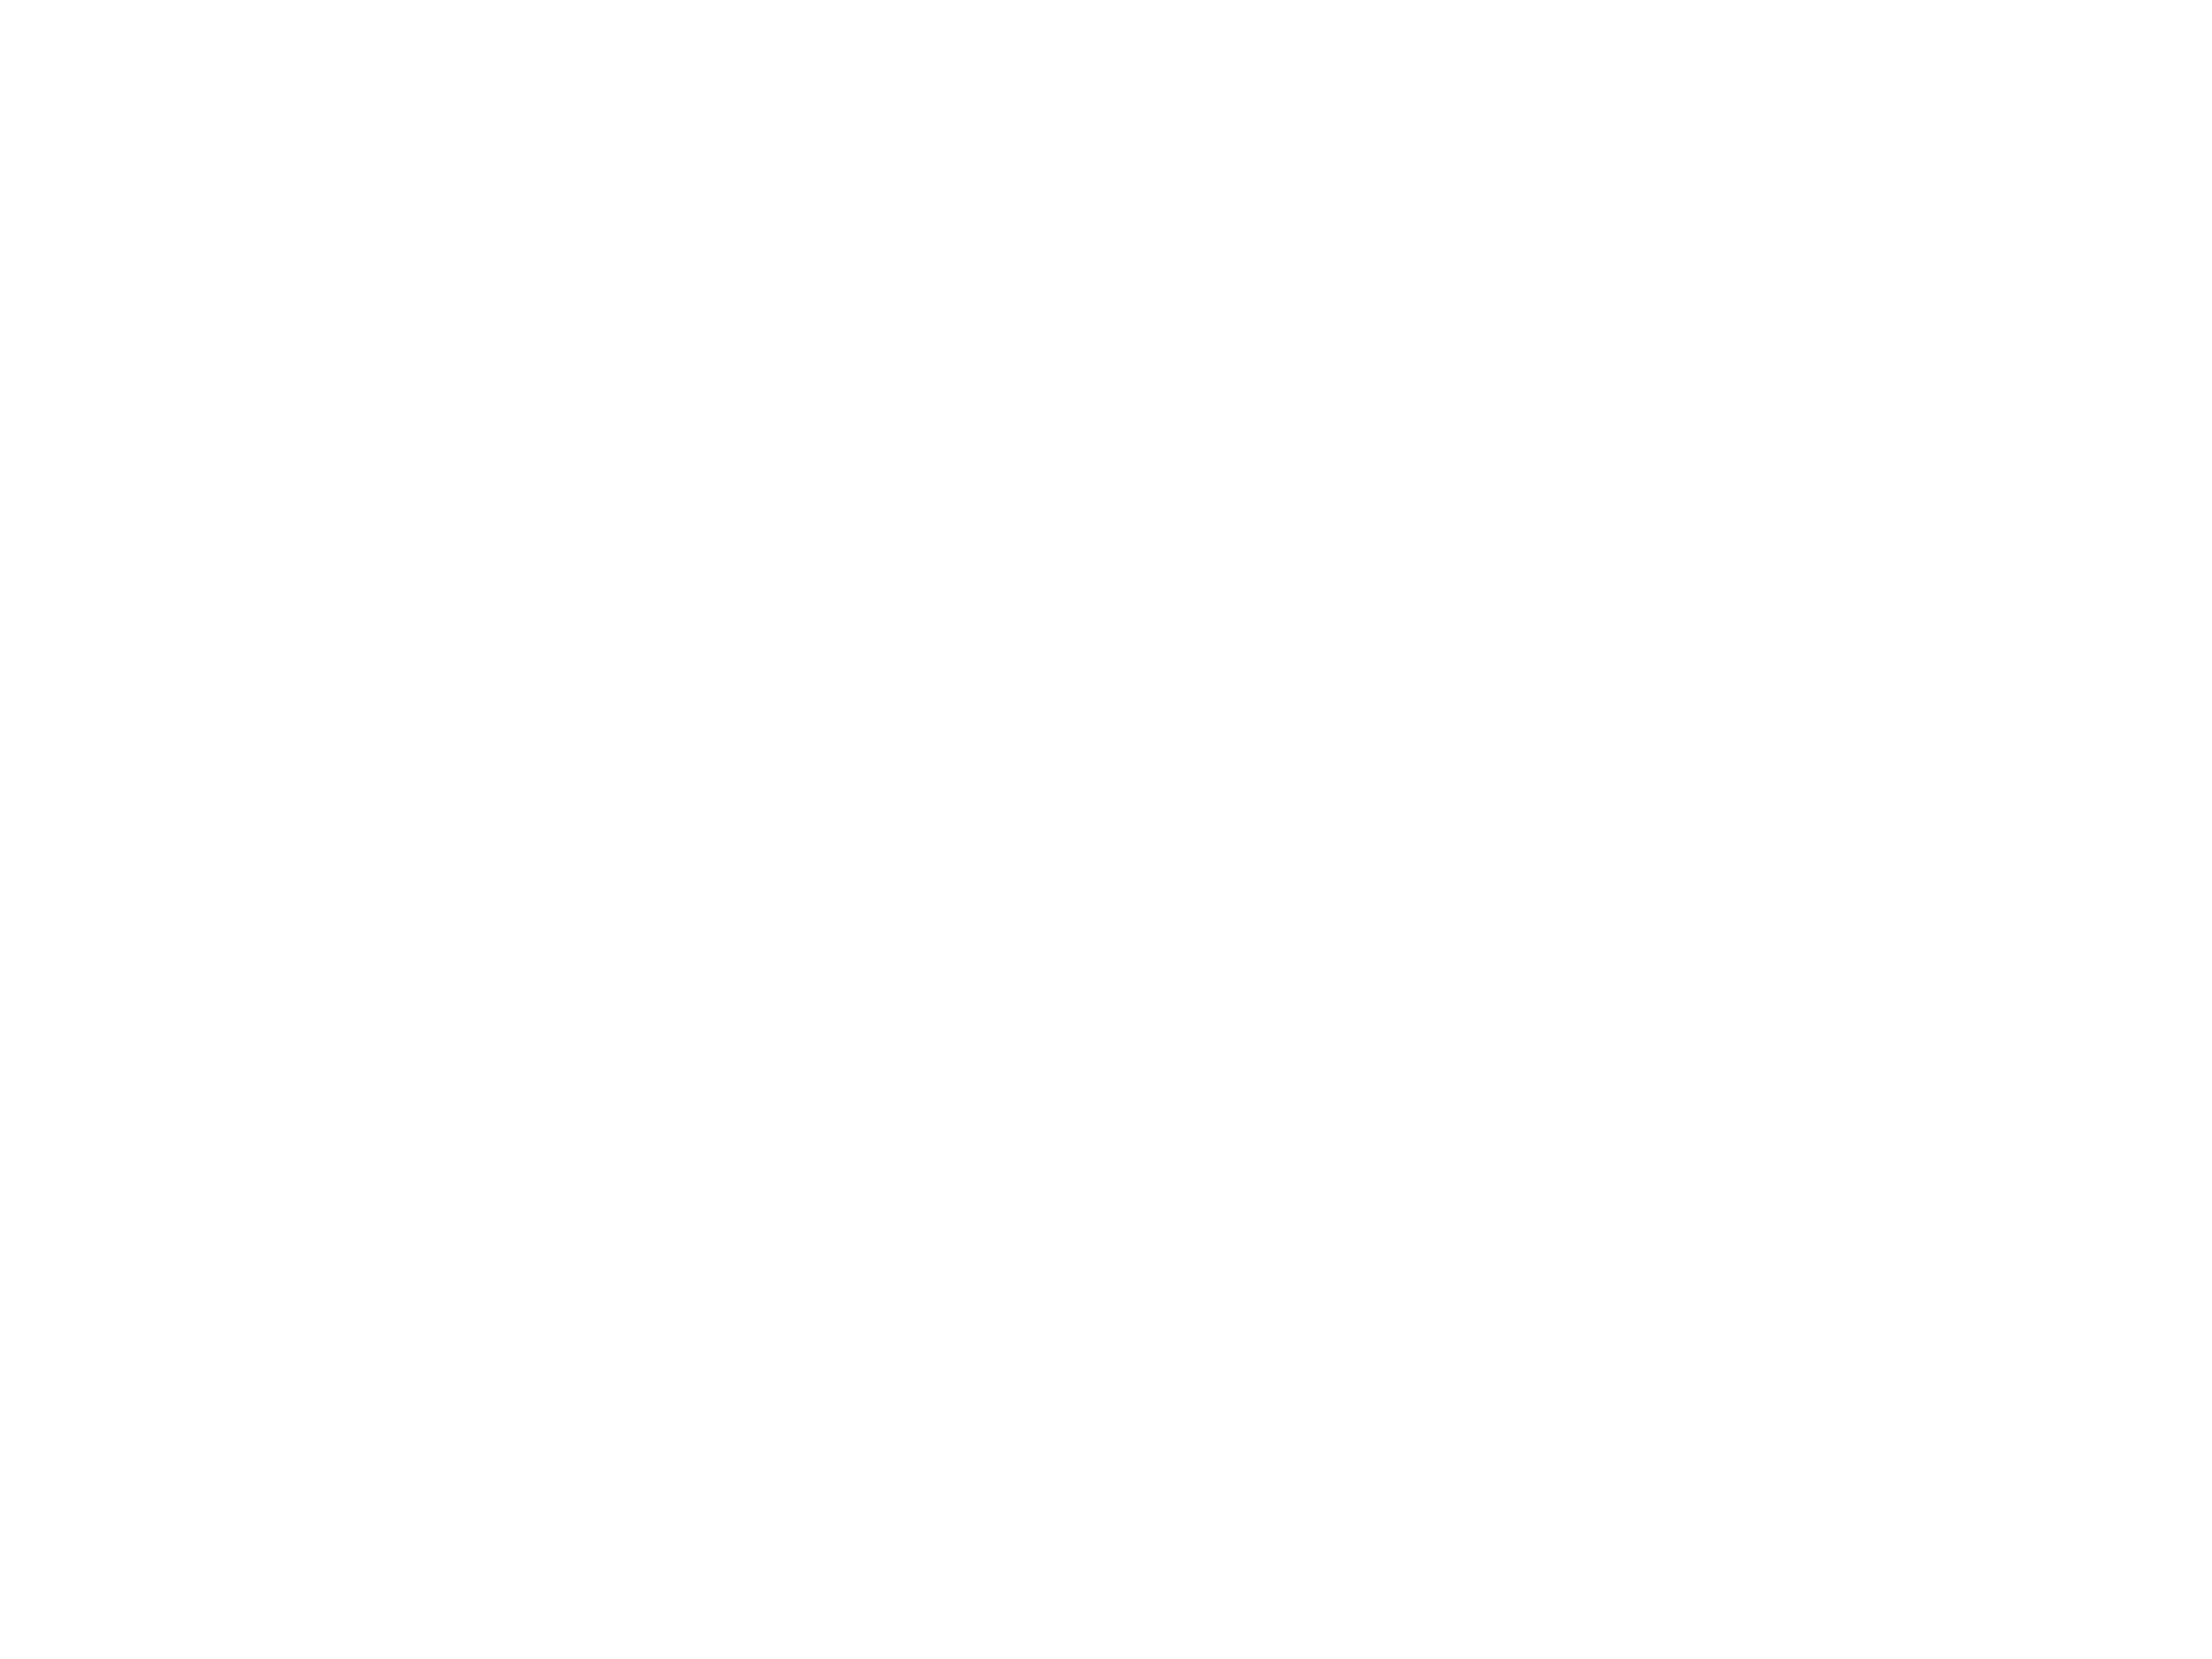 Lauréat Réseau Entreprendre